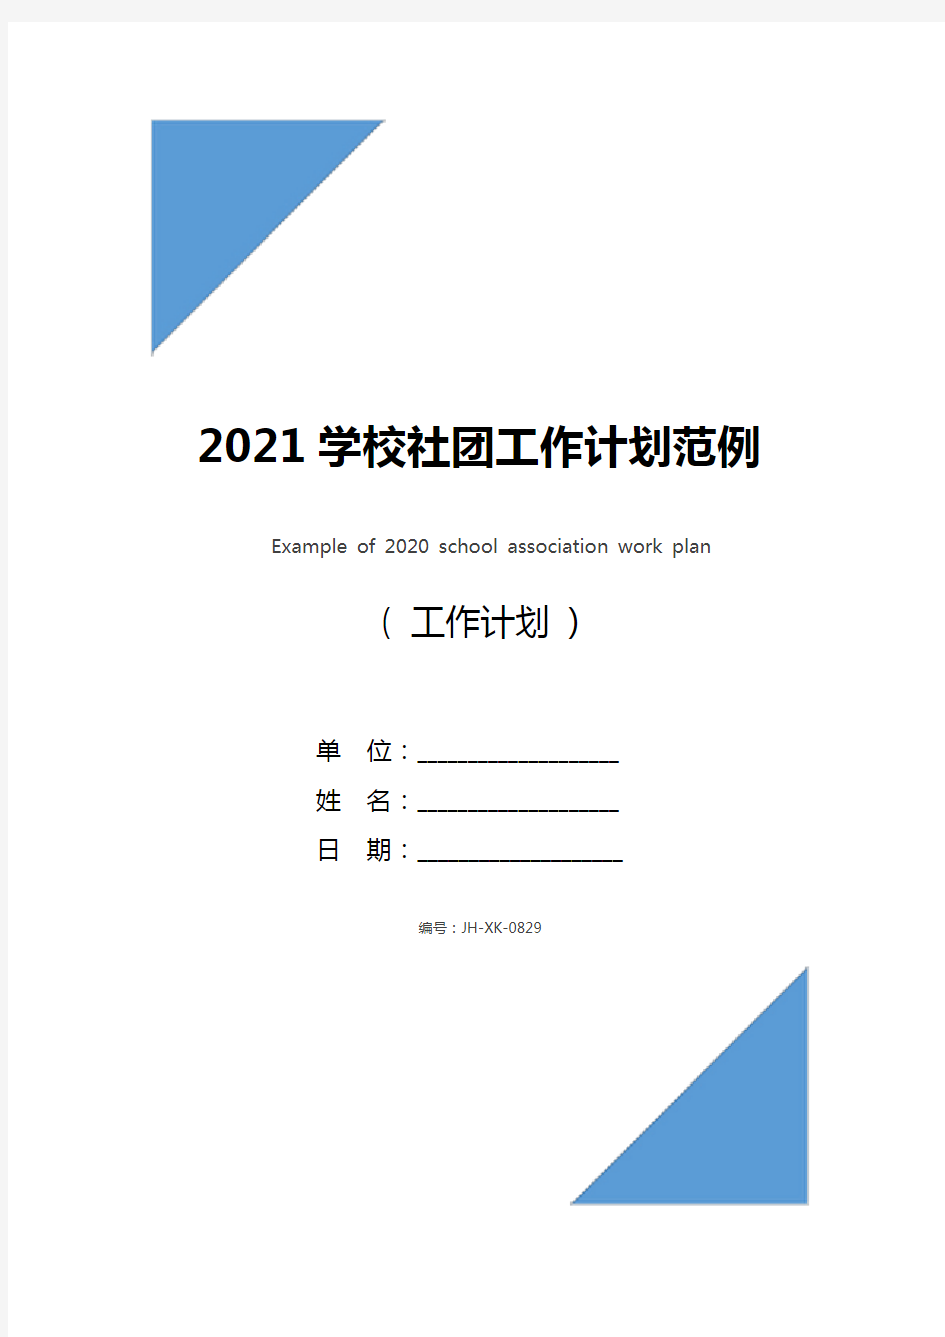 2021学校社团工作计划范例(通用版)